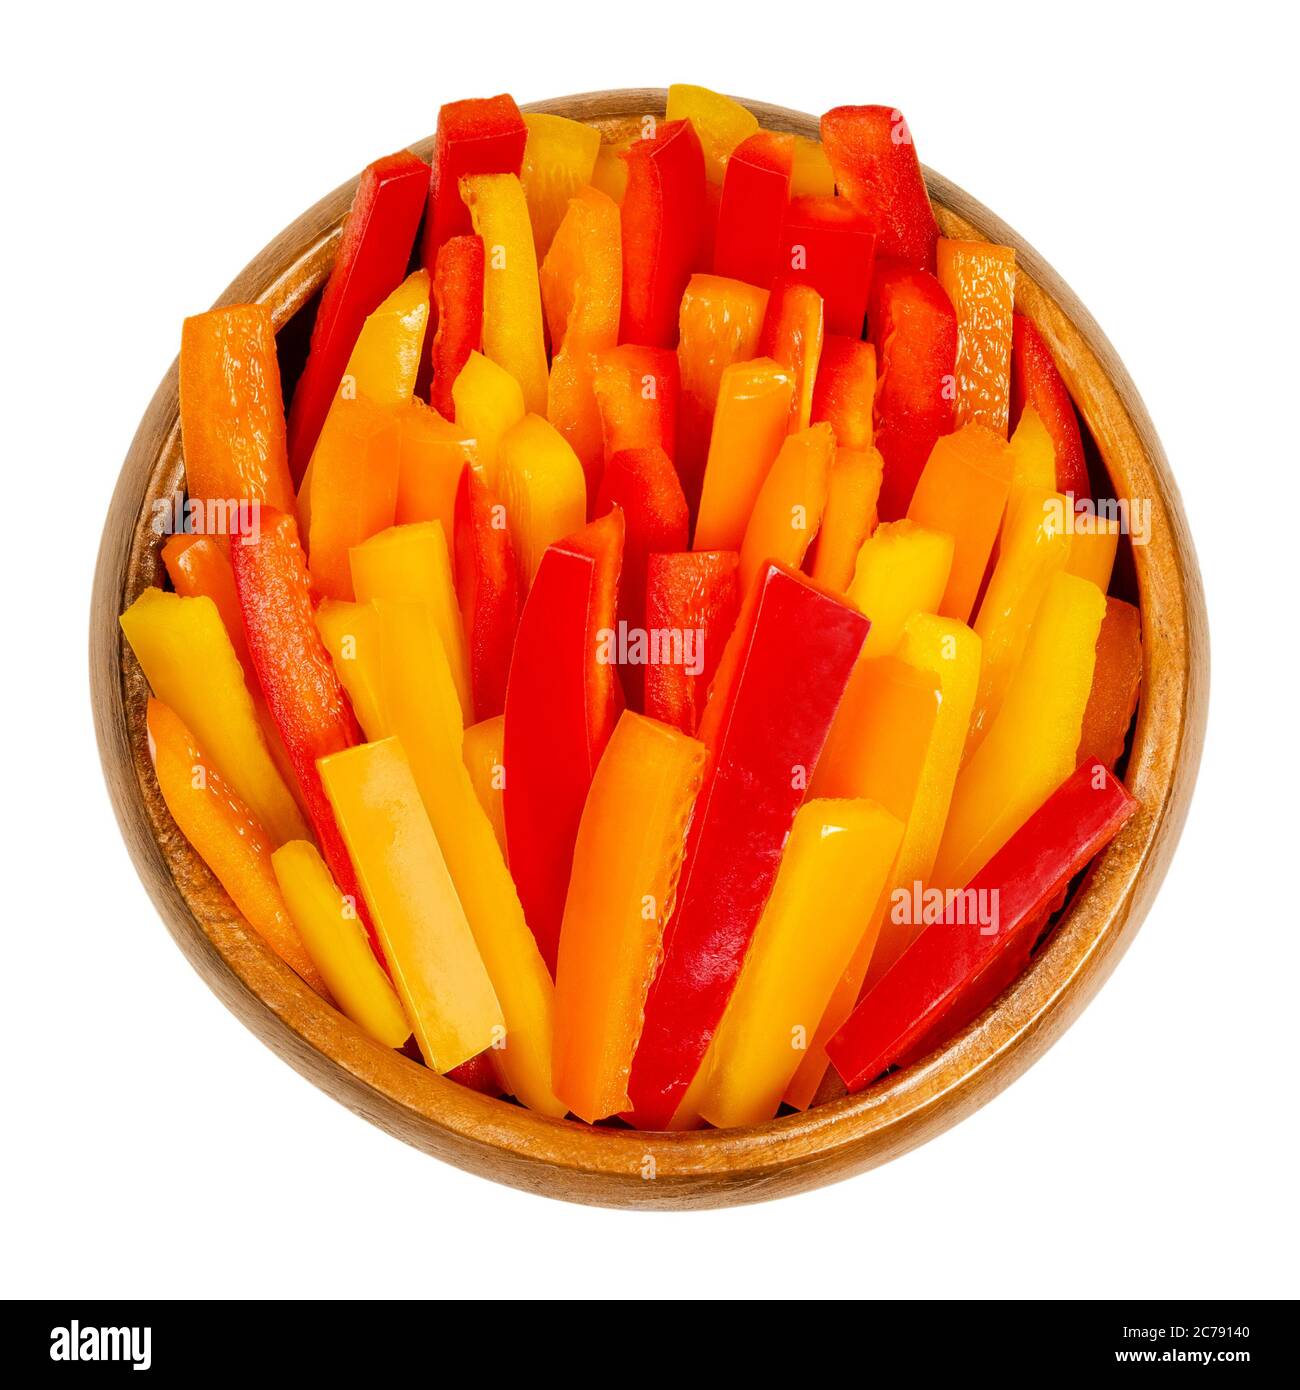 Paprika in Scheiben in einer Holzschüssel. Paprika, Paprika oder auch Paprika genannt, in bunten Streifen geschnitten. Frische gelbe, orange und rote Früchte. Stockfoto